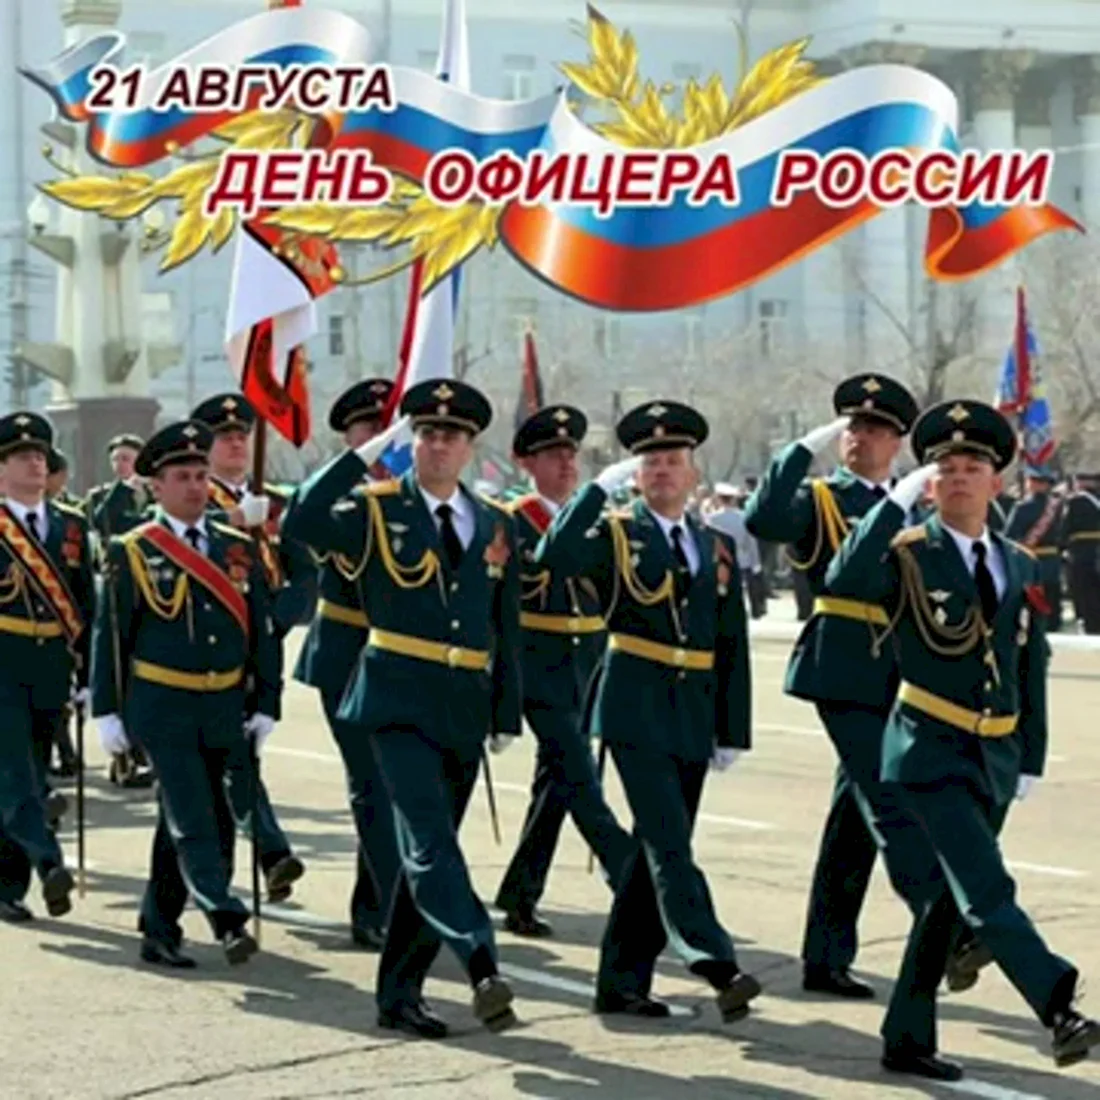 Офицера России 21 августа